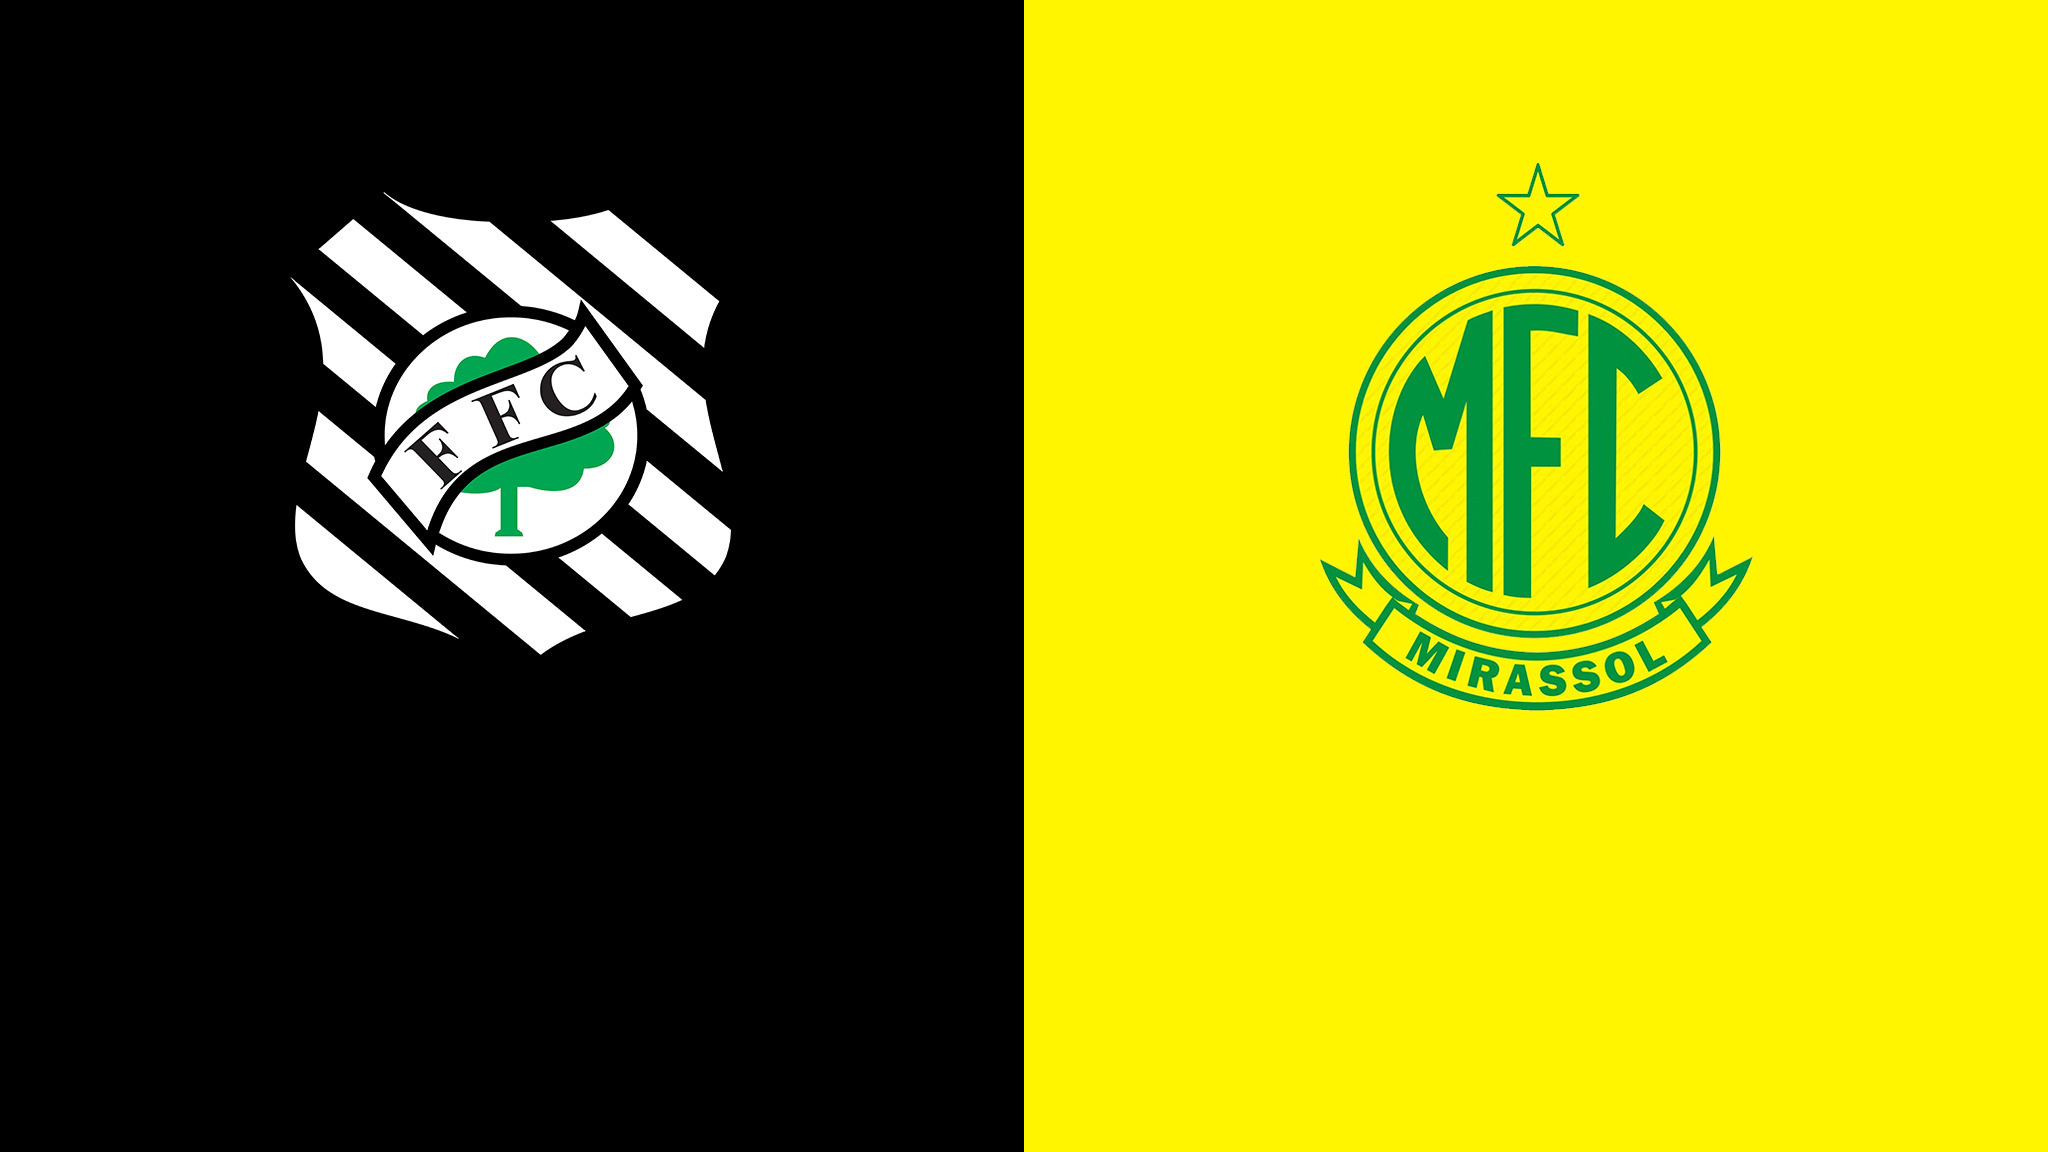 Figueirense x Mirassol – Prognóstico da 4ª Rodada do Brasileirão Série C 2021